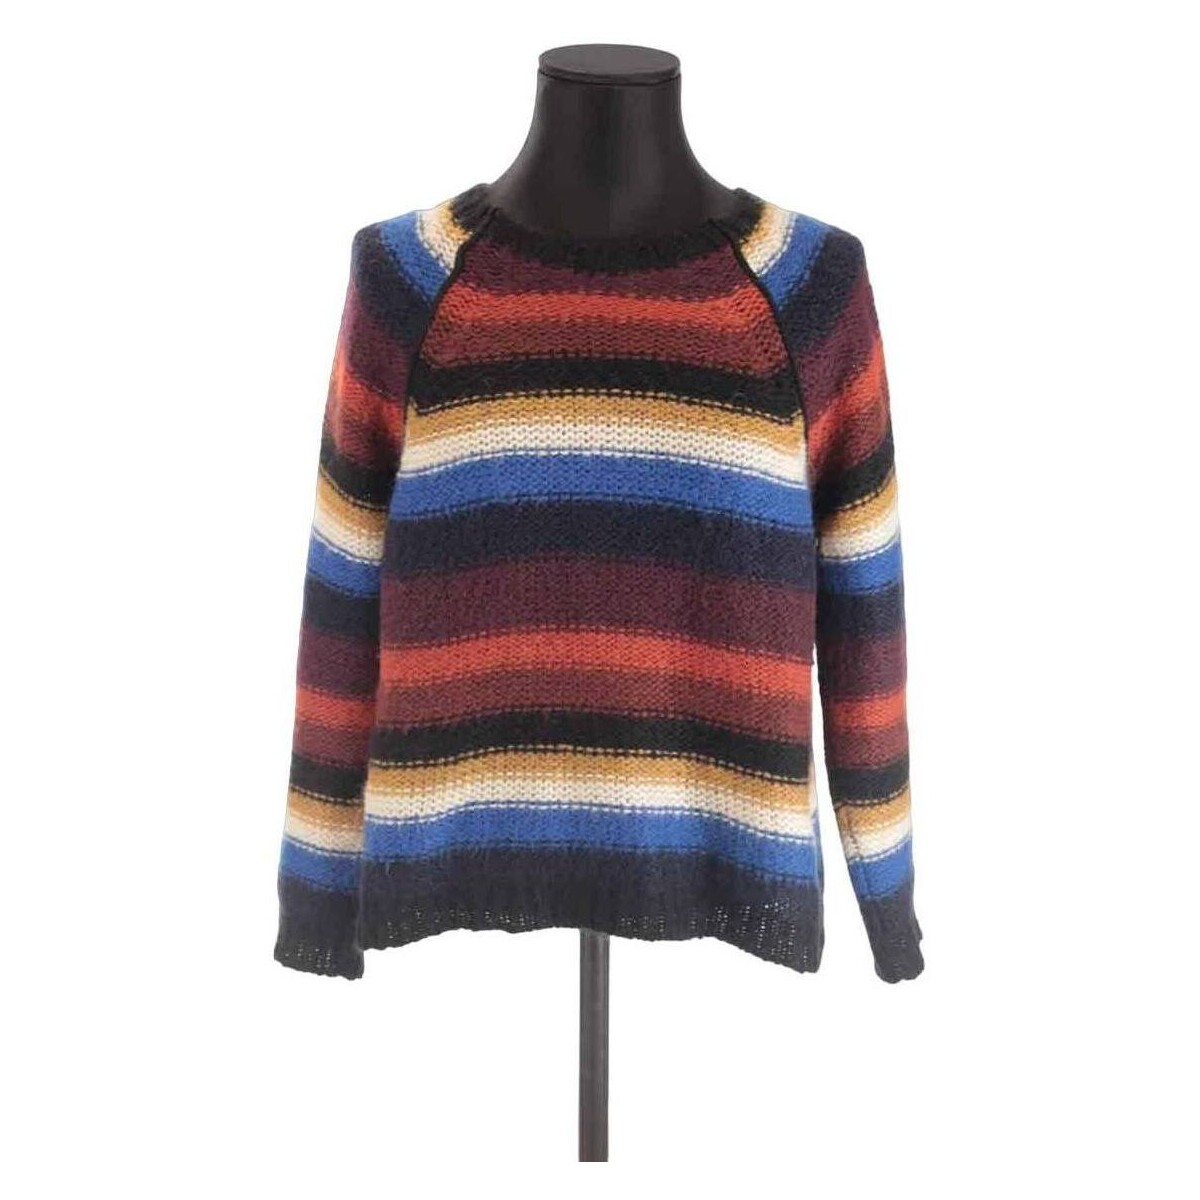 Vêtements Femme Sweats Bash Pull-over en laine Multicolore